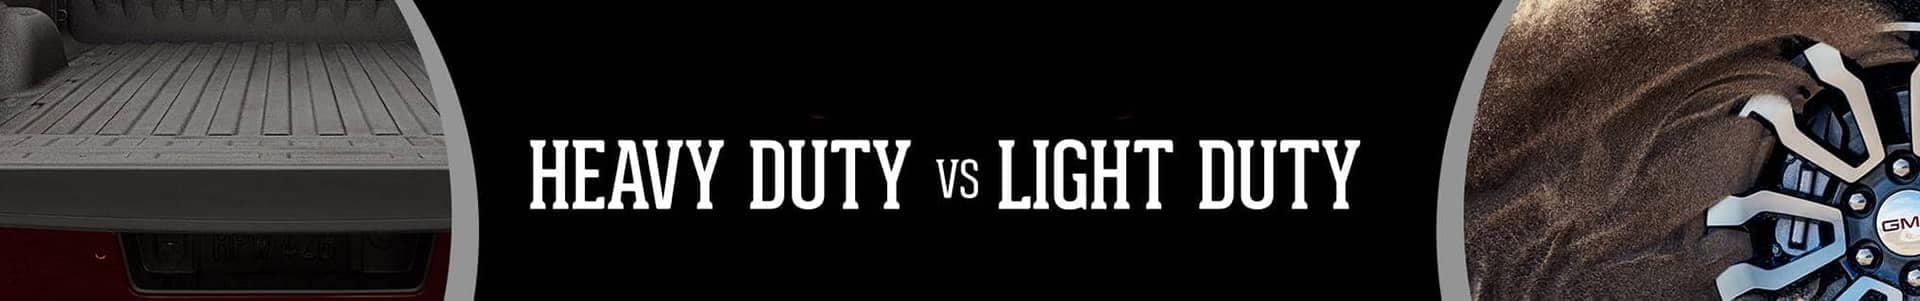 Light-Duty vs Heavy-Duty